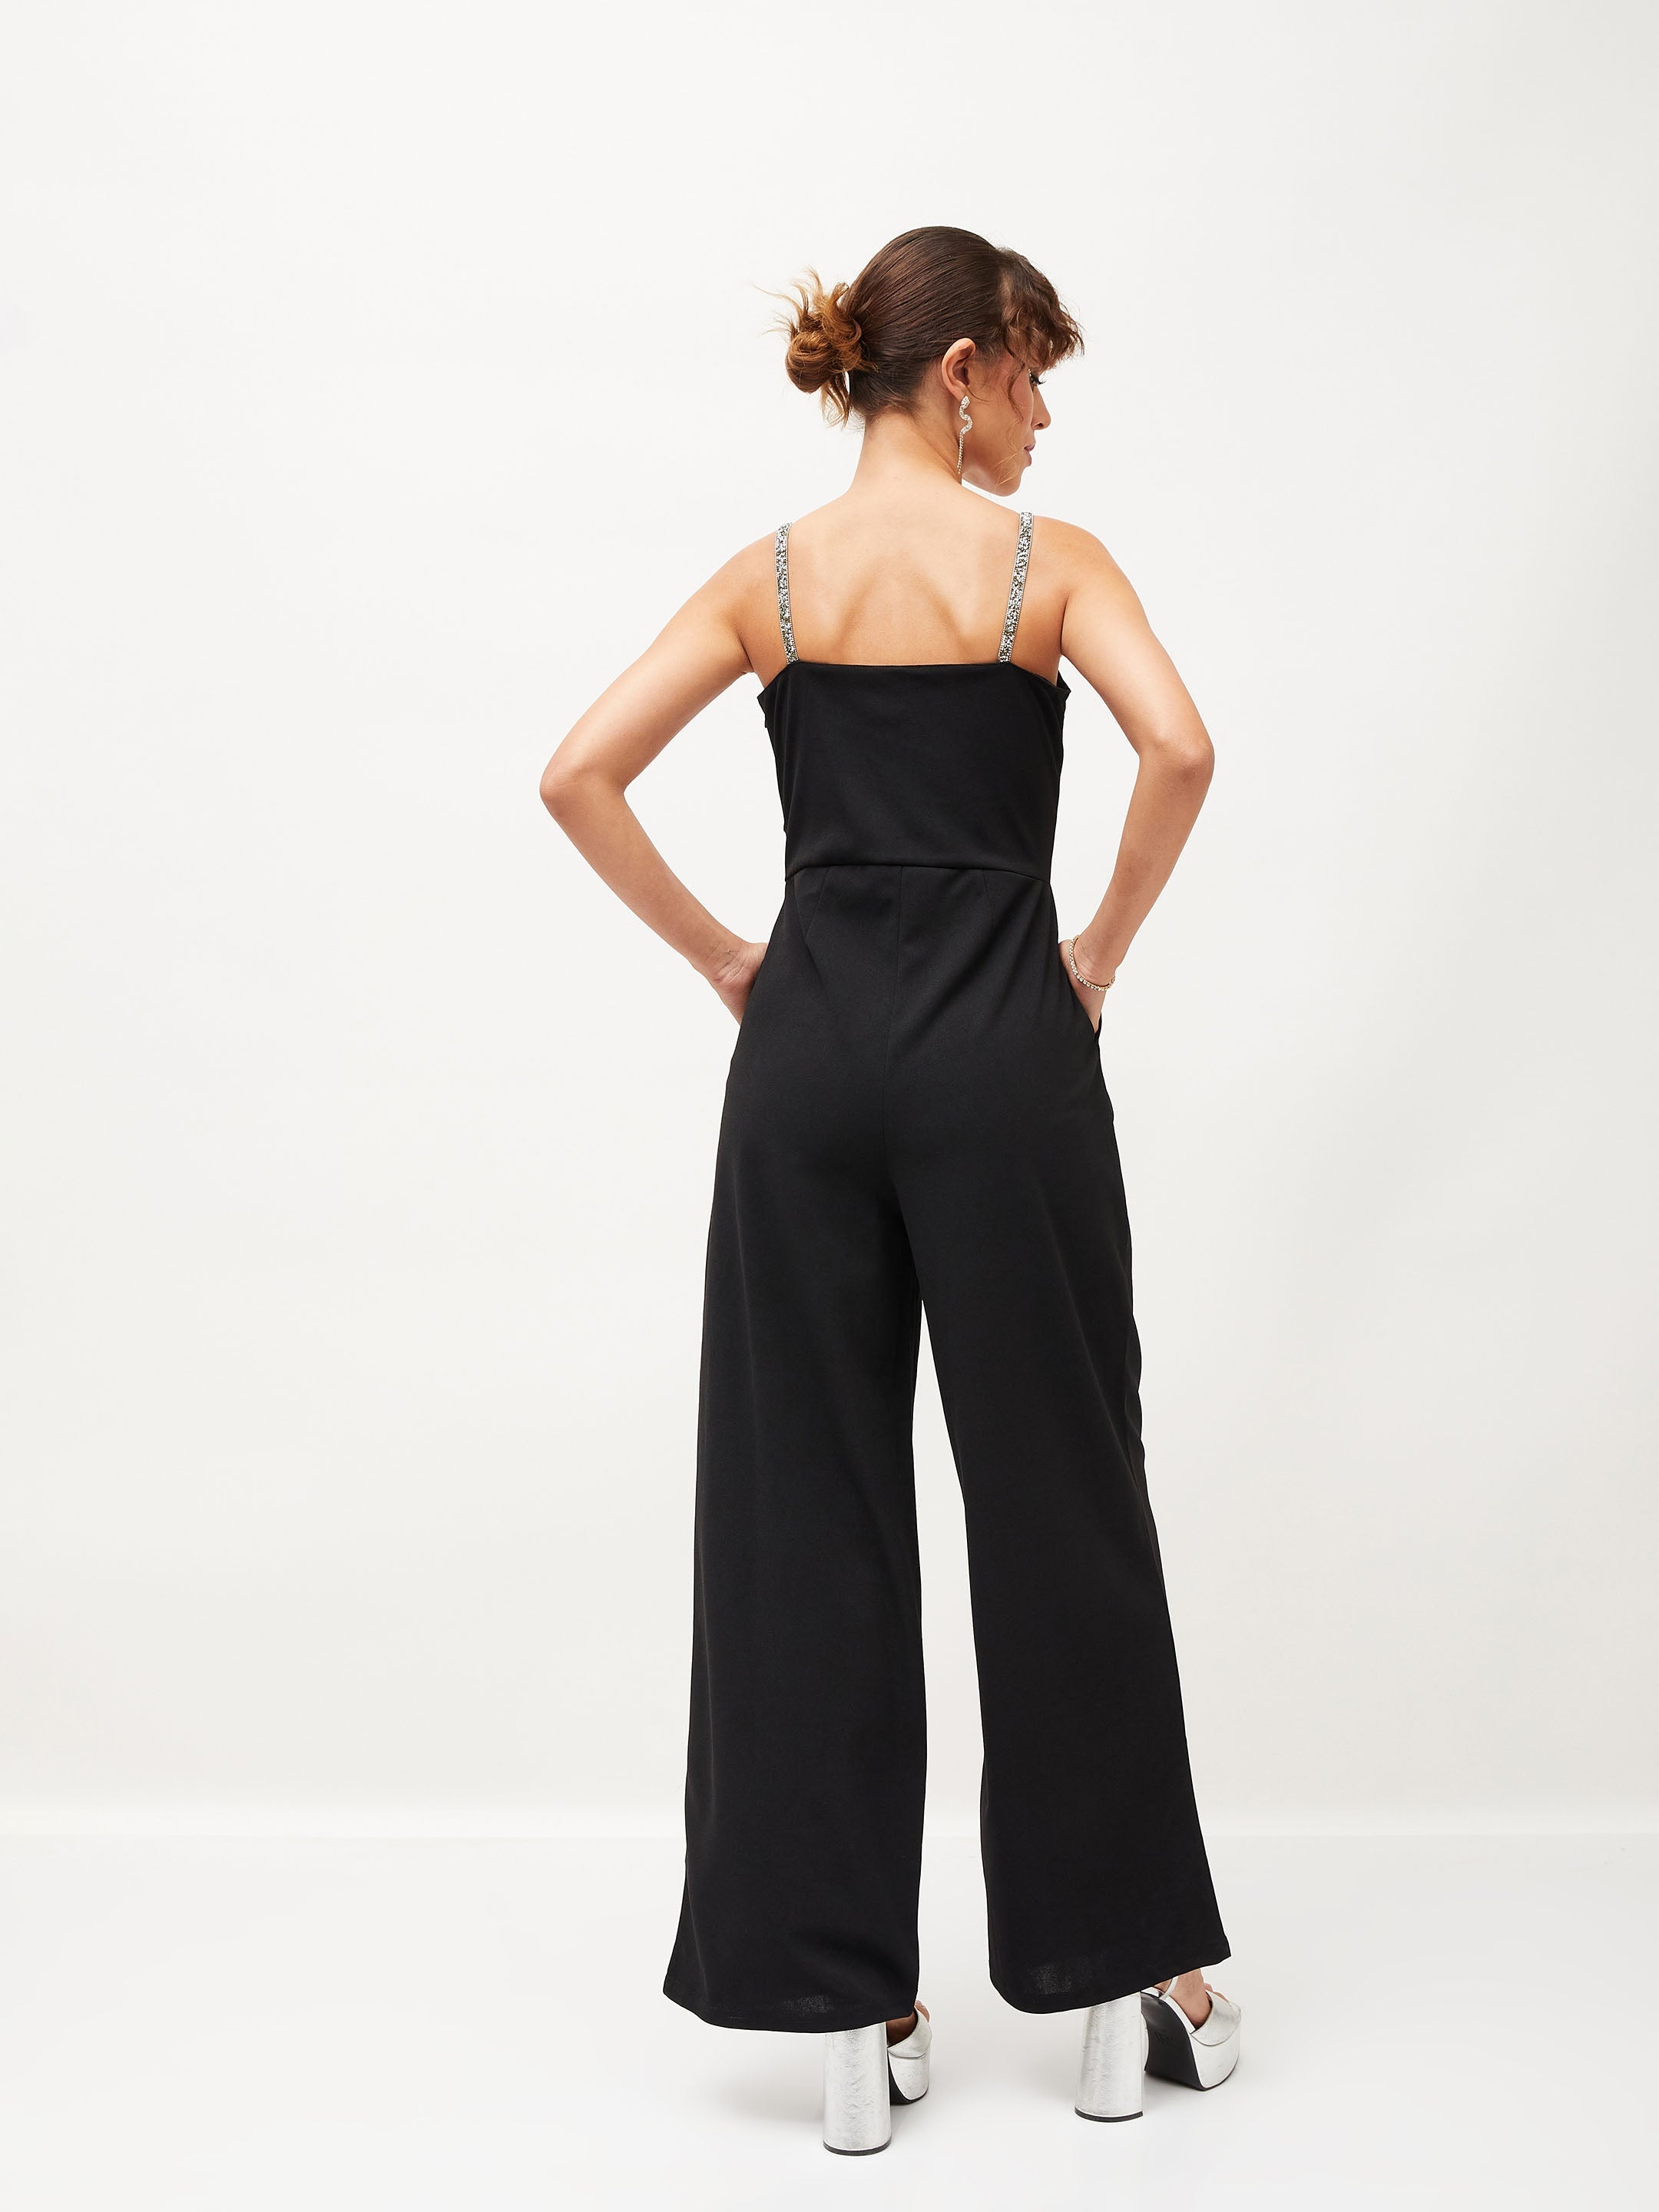 Women's Black Diamante Strap Detail Jumpsuit - Lyush